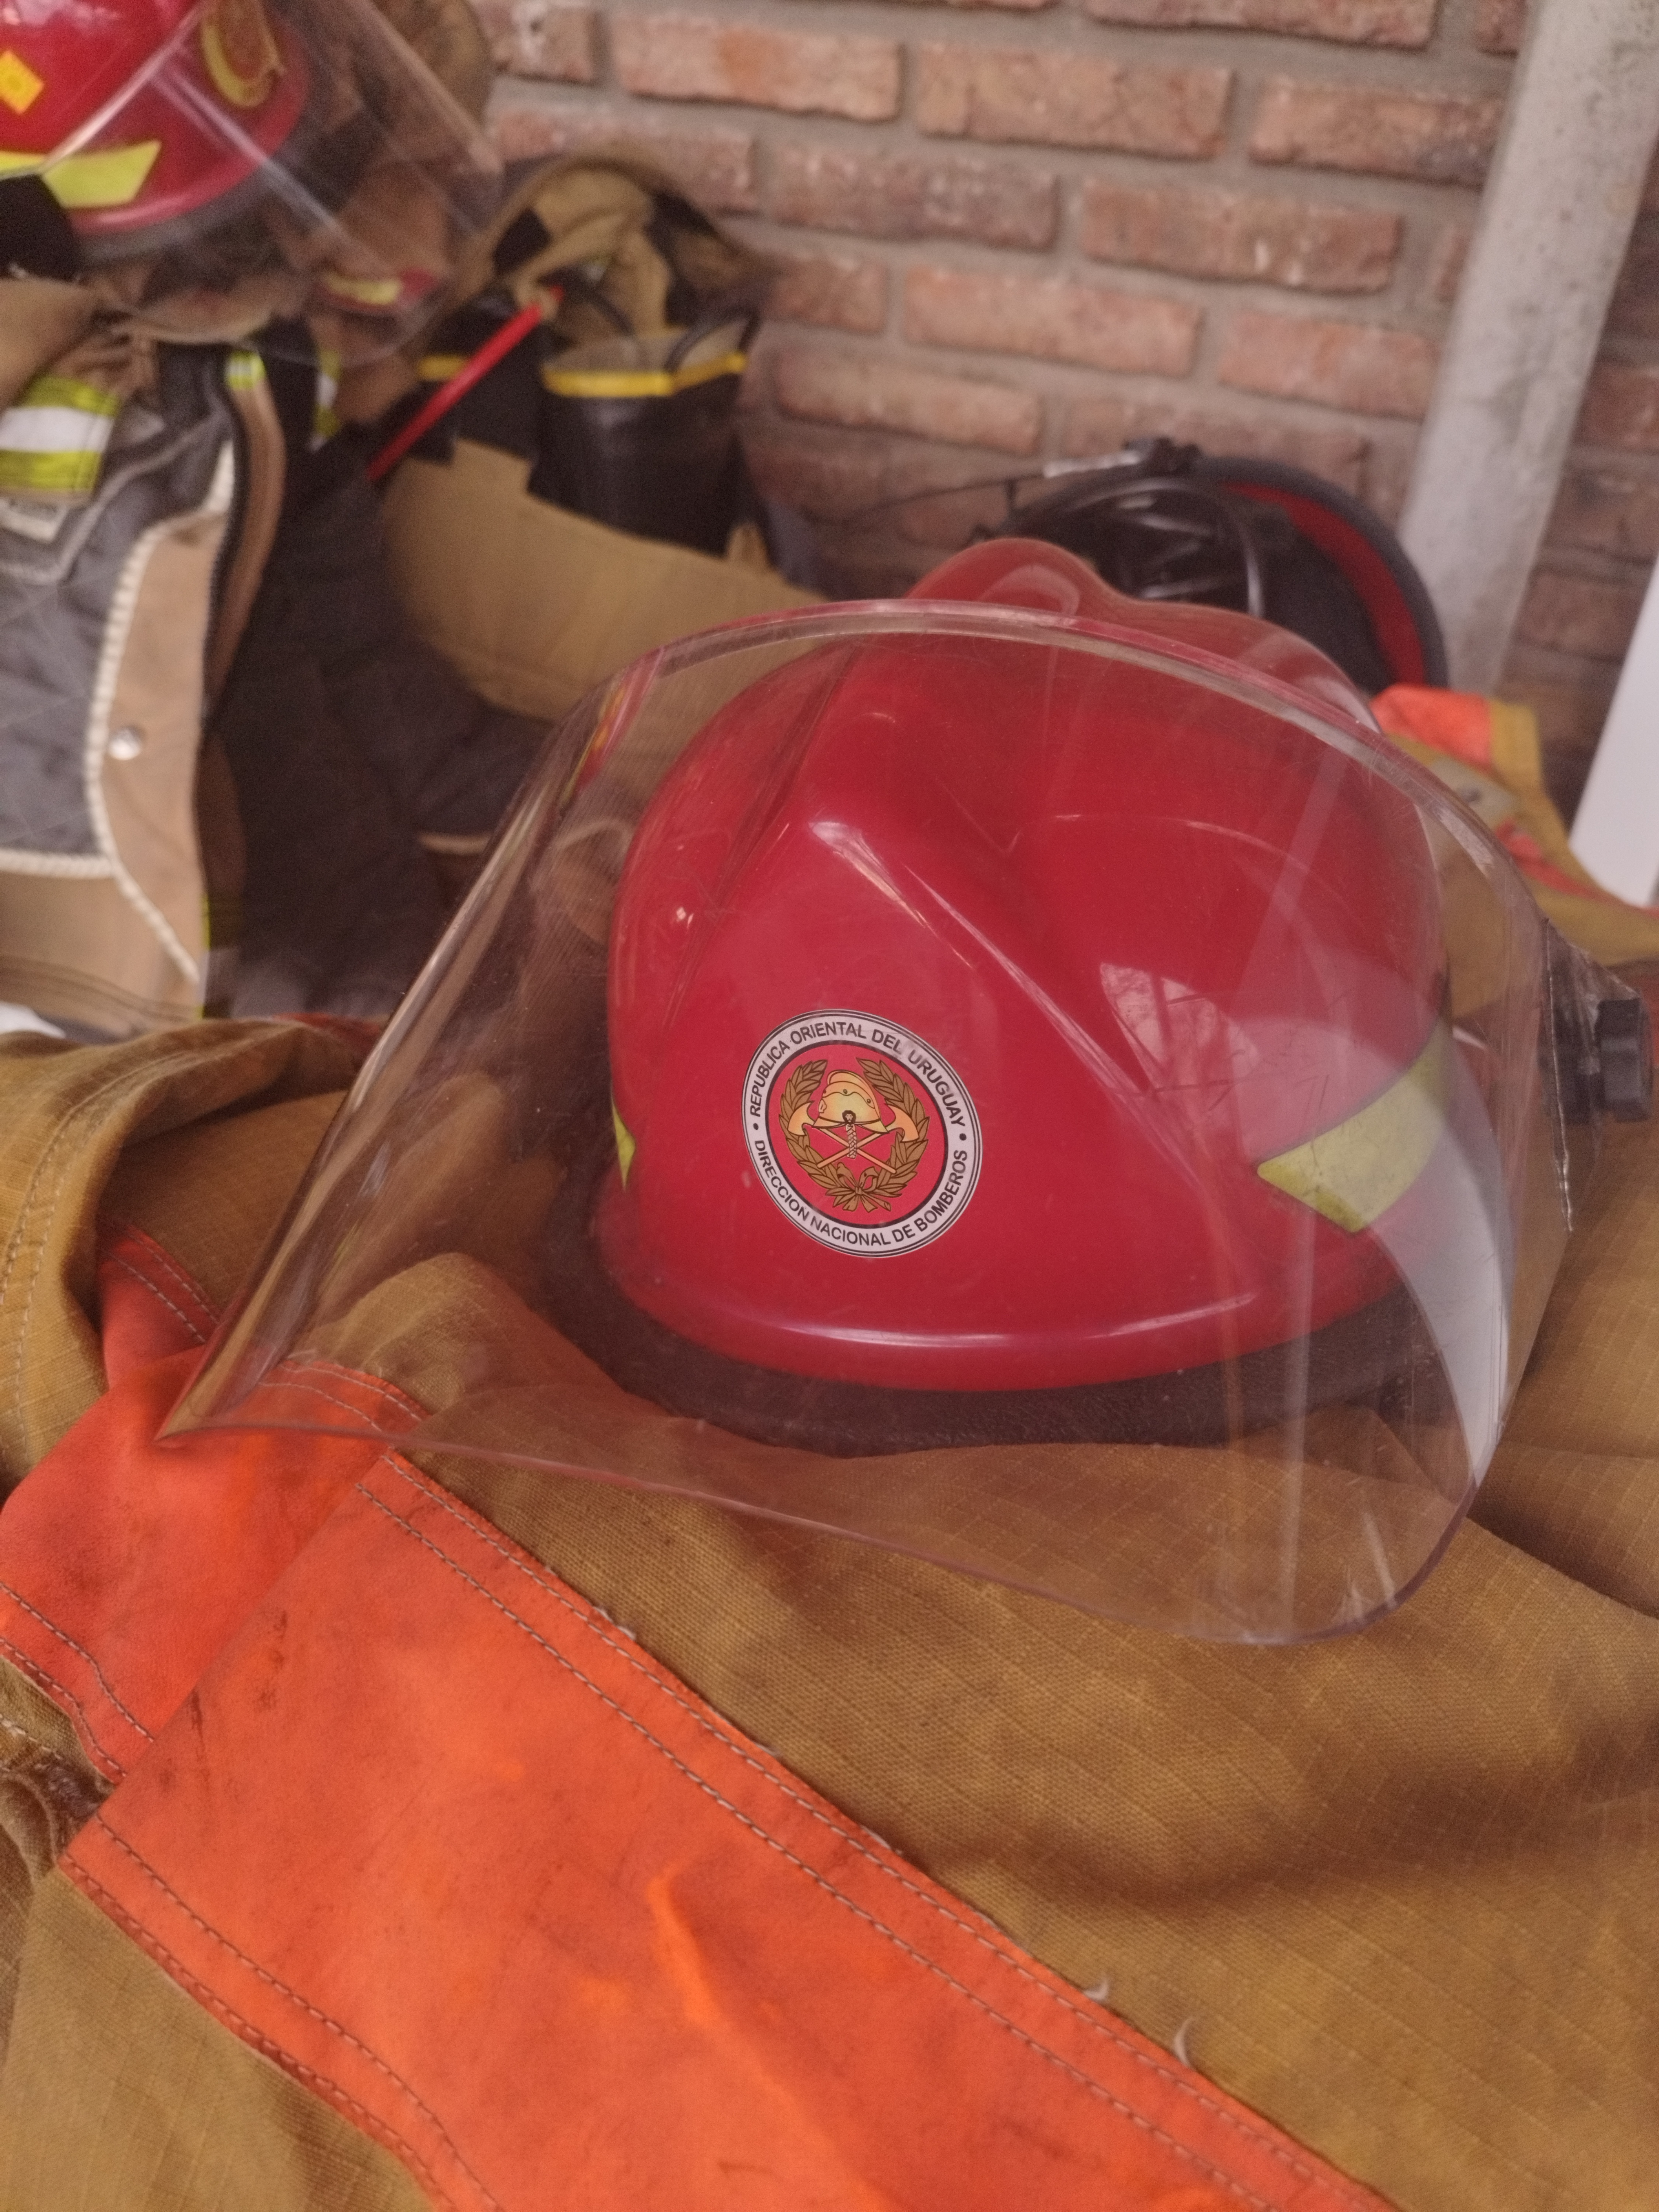 IMG_20230509_165941.jpg - El pasado jueves 11 de mayo culminó la &#034;Capacitación para bomberos sobre manejo de incidentes relacionados con la movilidad eléctrica&#034; en donde se capacitaron a 25 bomberos en la Base Aérea de Santa Bernardina del departamento de Durazno. Esta capacitación es la continuación del primer curso regional que organizó la plataforma MOVE del Programa de la Naciones Unidas para el Medio Ambiente a finales de 2022 en Paraguay, donde participaron y se formaron dos bomberos instructores de Uruguay.